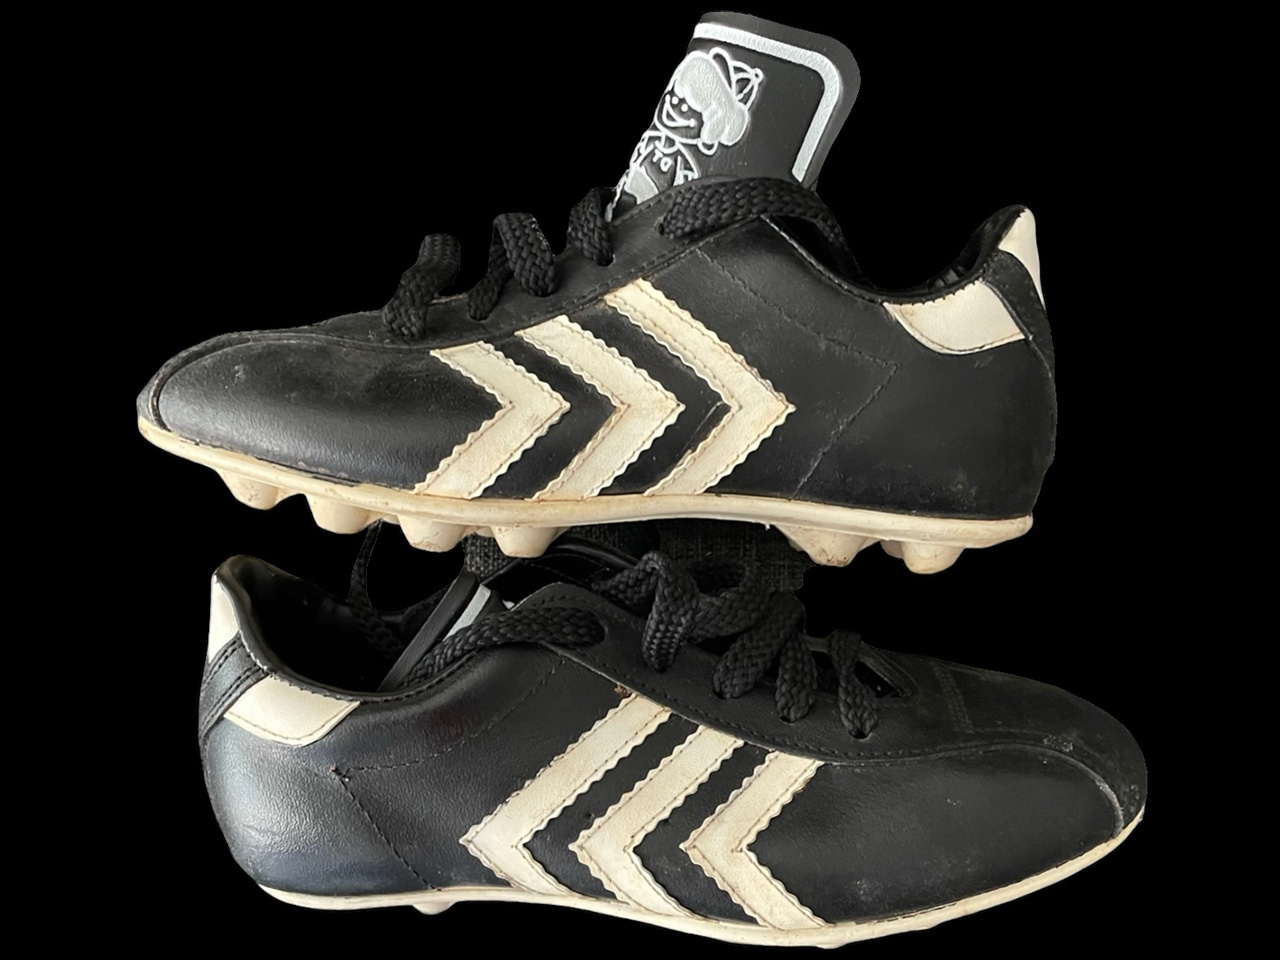 Vintage soccer shoes